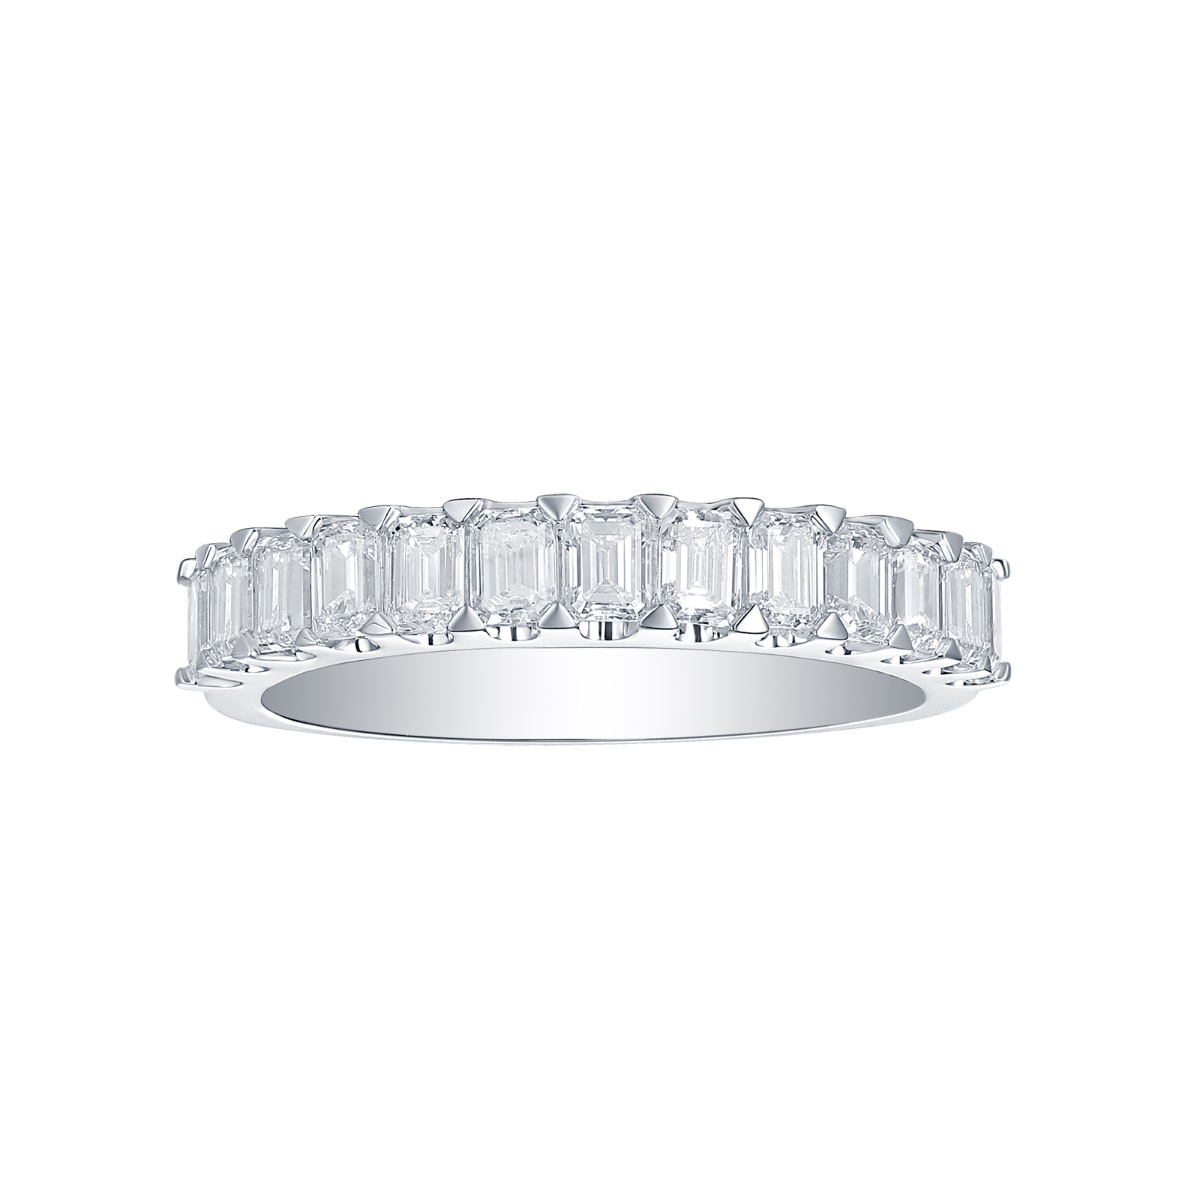 R35229WHT – 18K White Gold Diamond Ring, 1.2 TCW